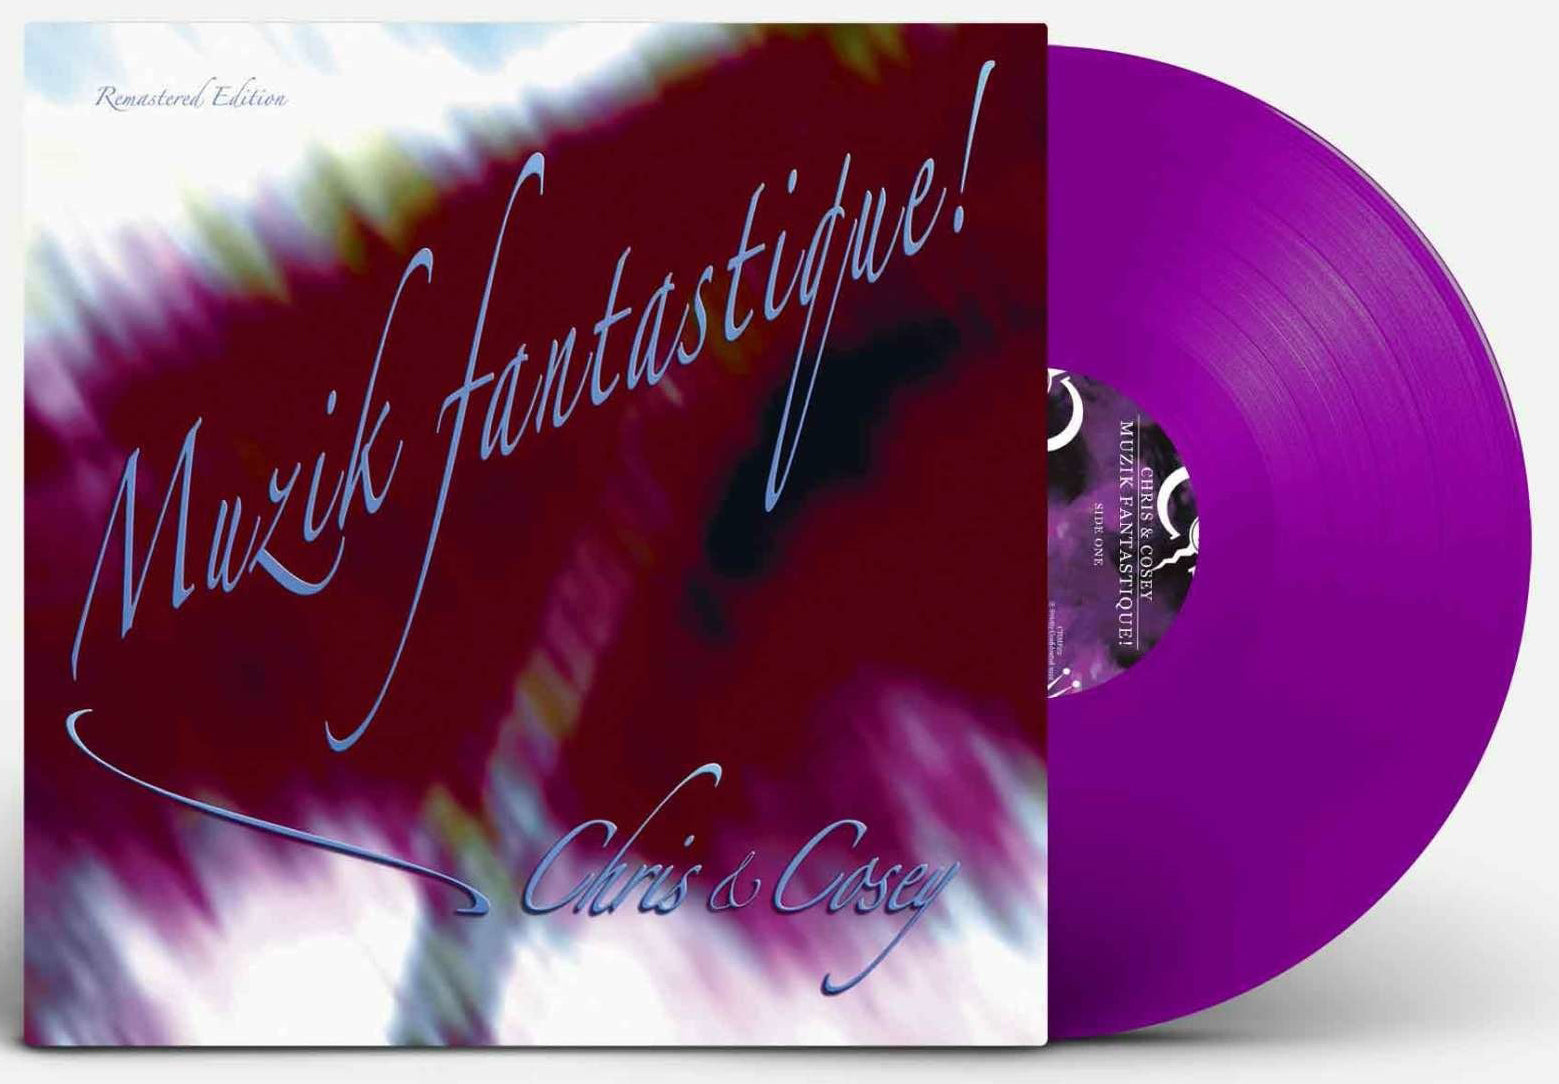 Chris & Cosey Musik Fantastique Pink/Purple Vinyl LP